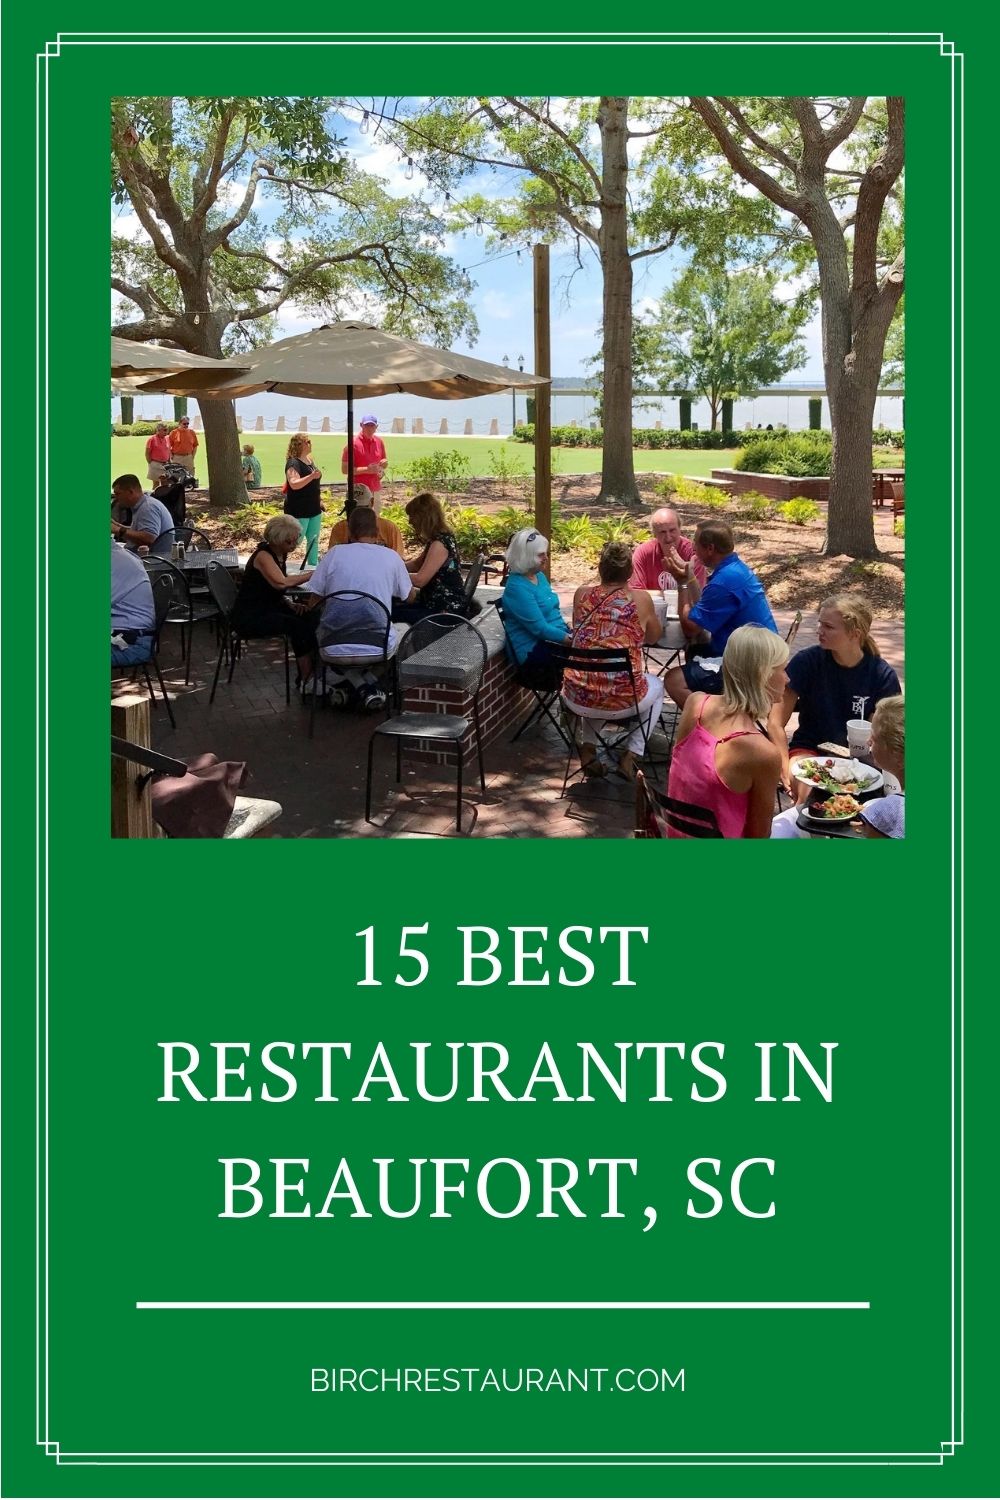 Best Restaurants in Beaufort